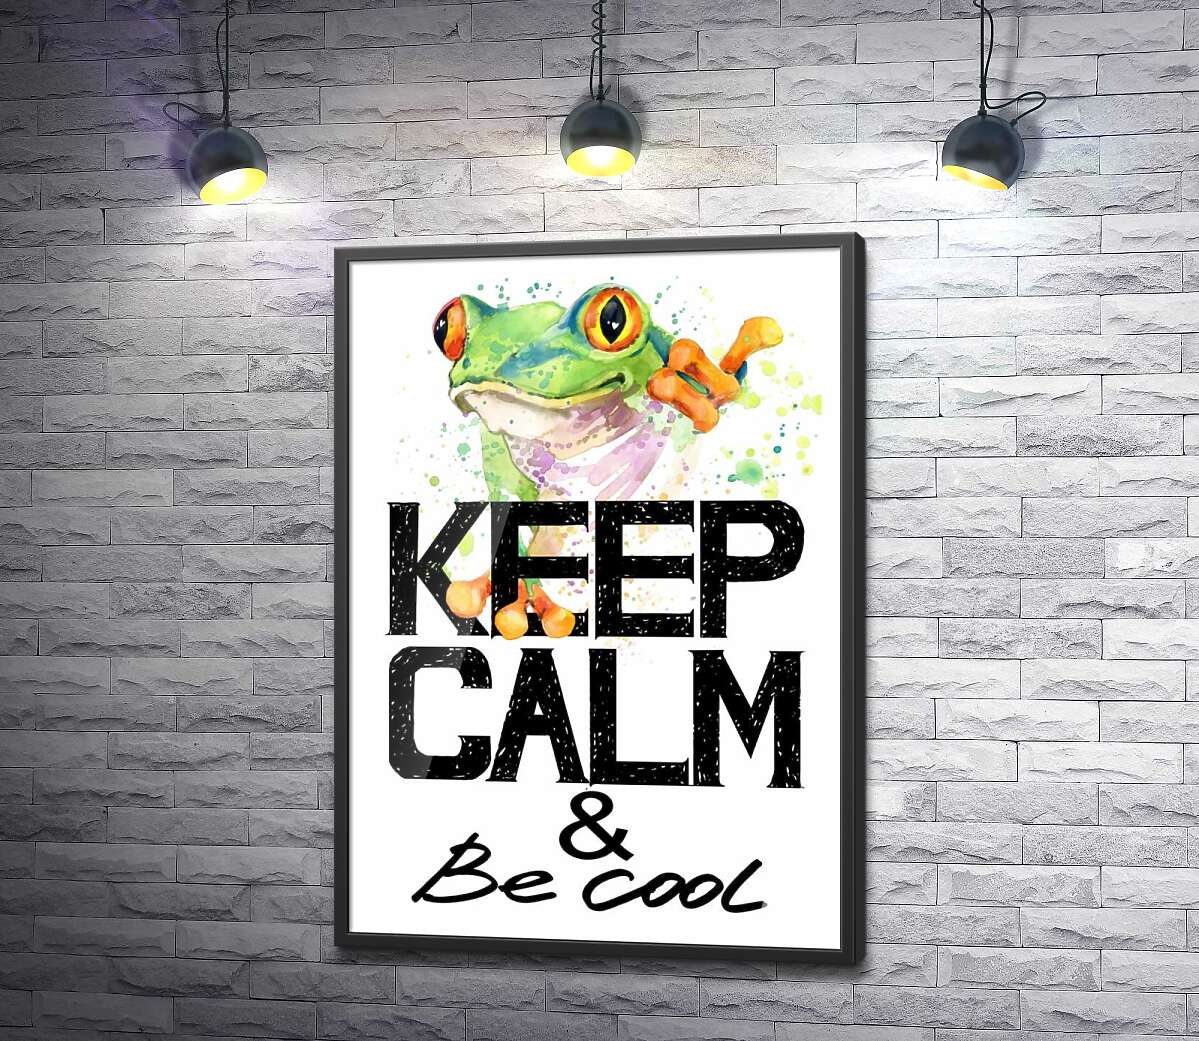 постер Деревна жаба за написом "keep calm and be cool"